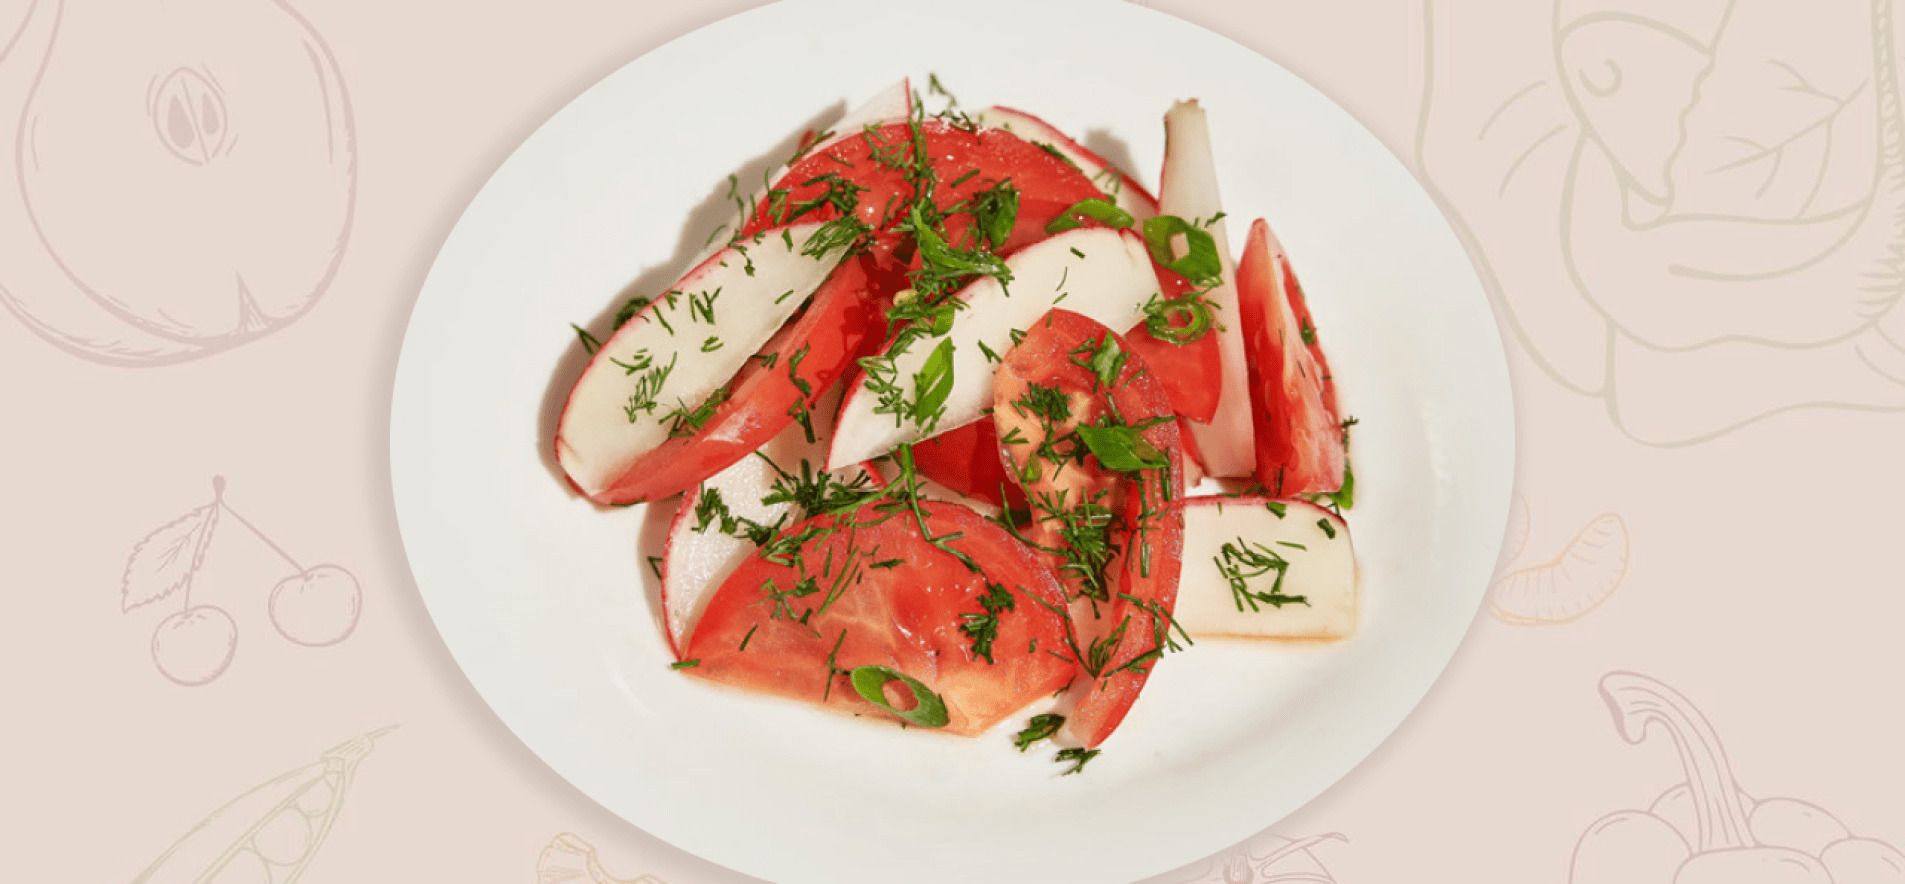 Салат с томатами и редисом - приготовьте просто и быстро - пошаговый рецепт - Новости Вкусно